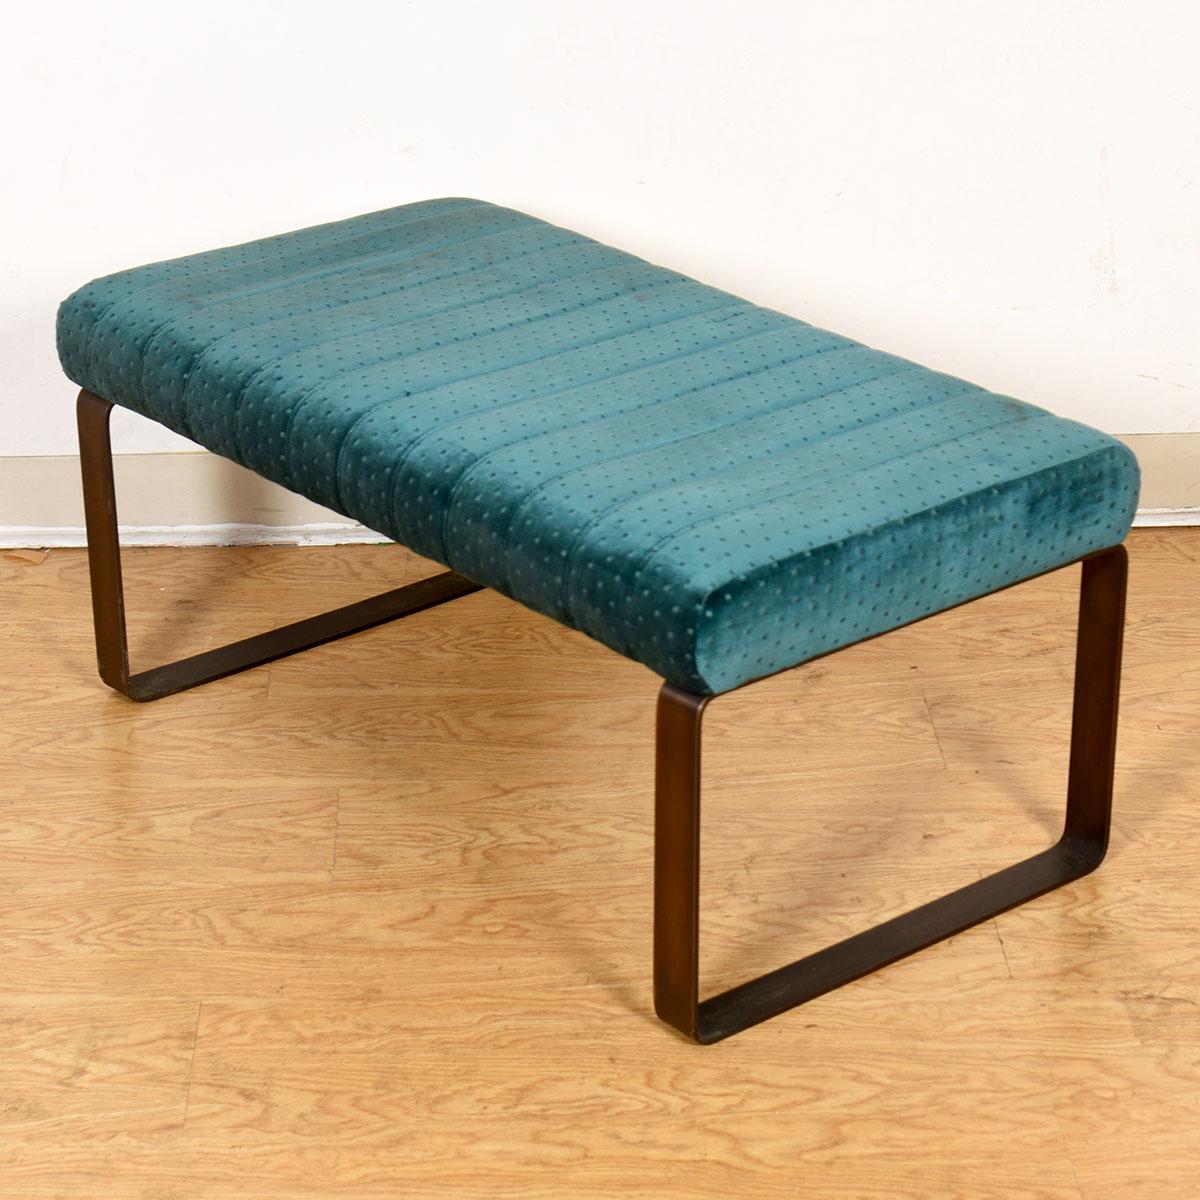 20th Century Modern Upholstered Green Velvet Bench with Metal Sleigh-Leg Frame For Sale